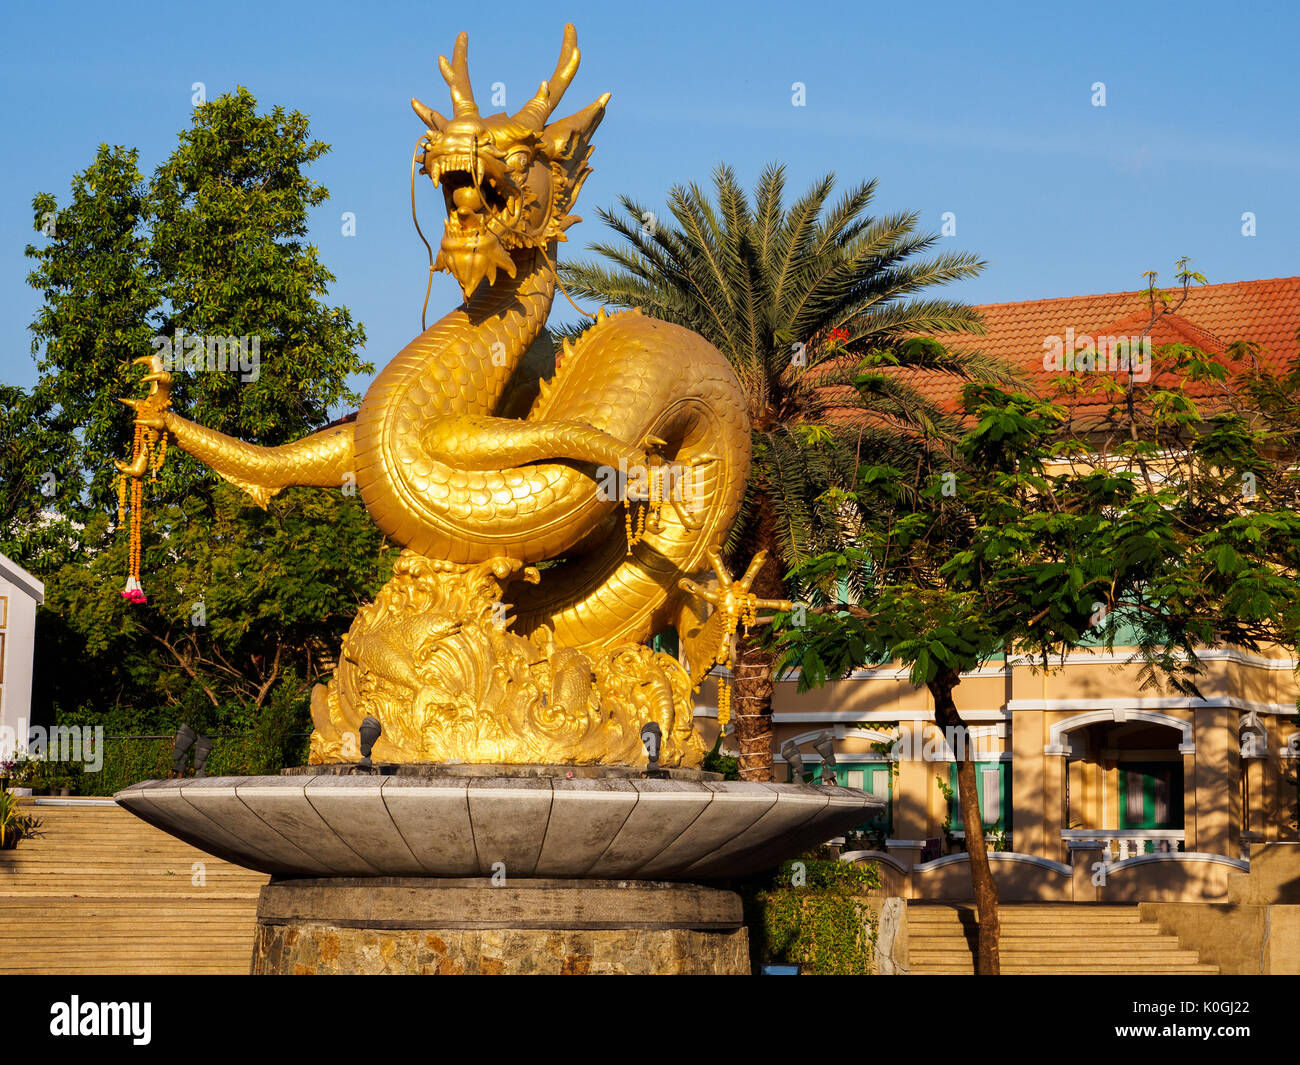 Golden dragon statue dans la ville de Phuket, Thaïlande Banque D'Images